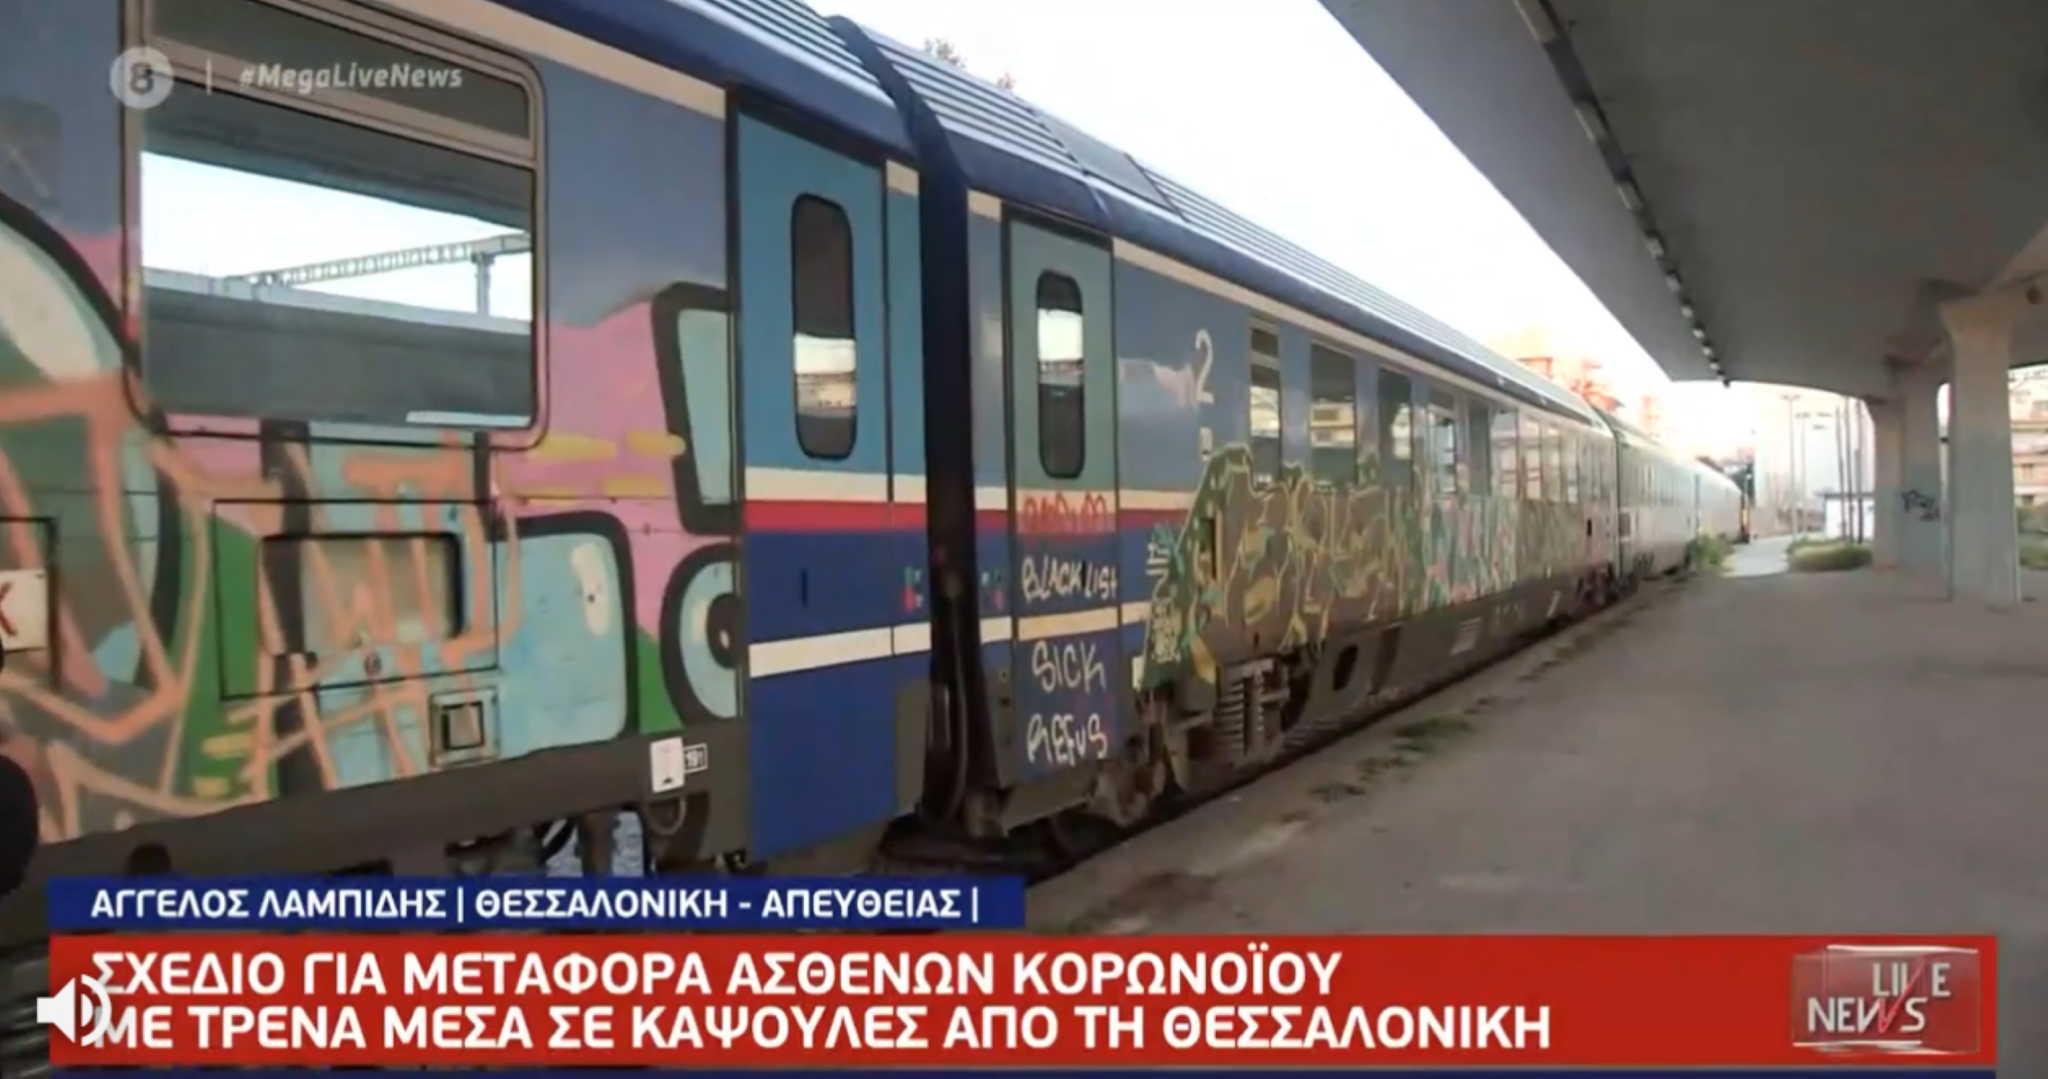 Μέσα στα τρένα για τη μεταφορά ασθενών από τη Θεσσαλονίκη – Σχέδιο για άνοιγμα καταφυγίου